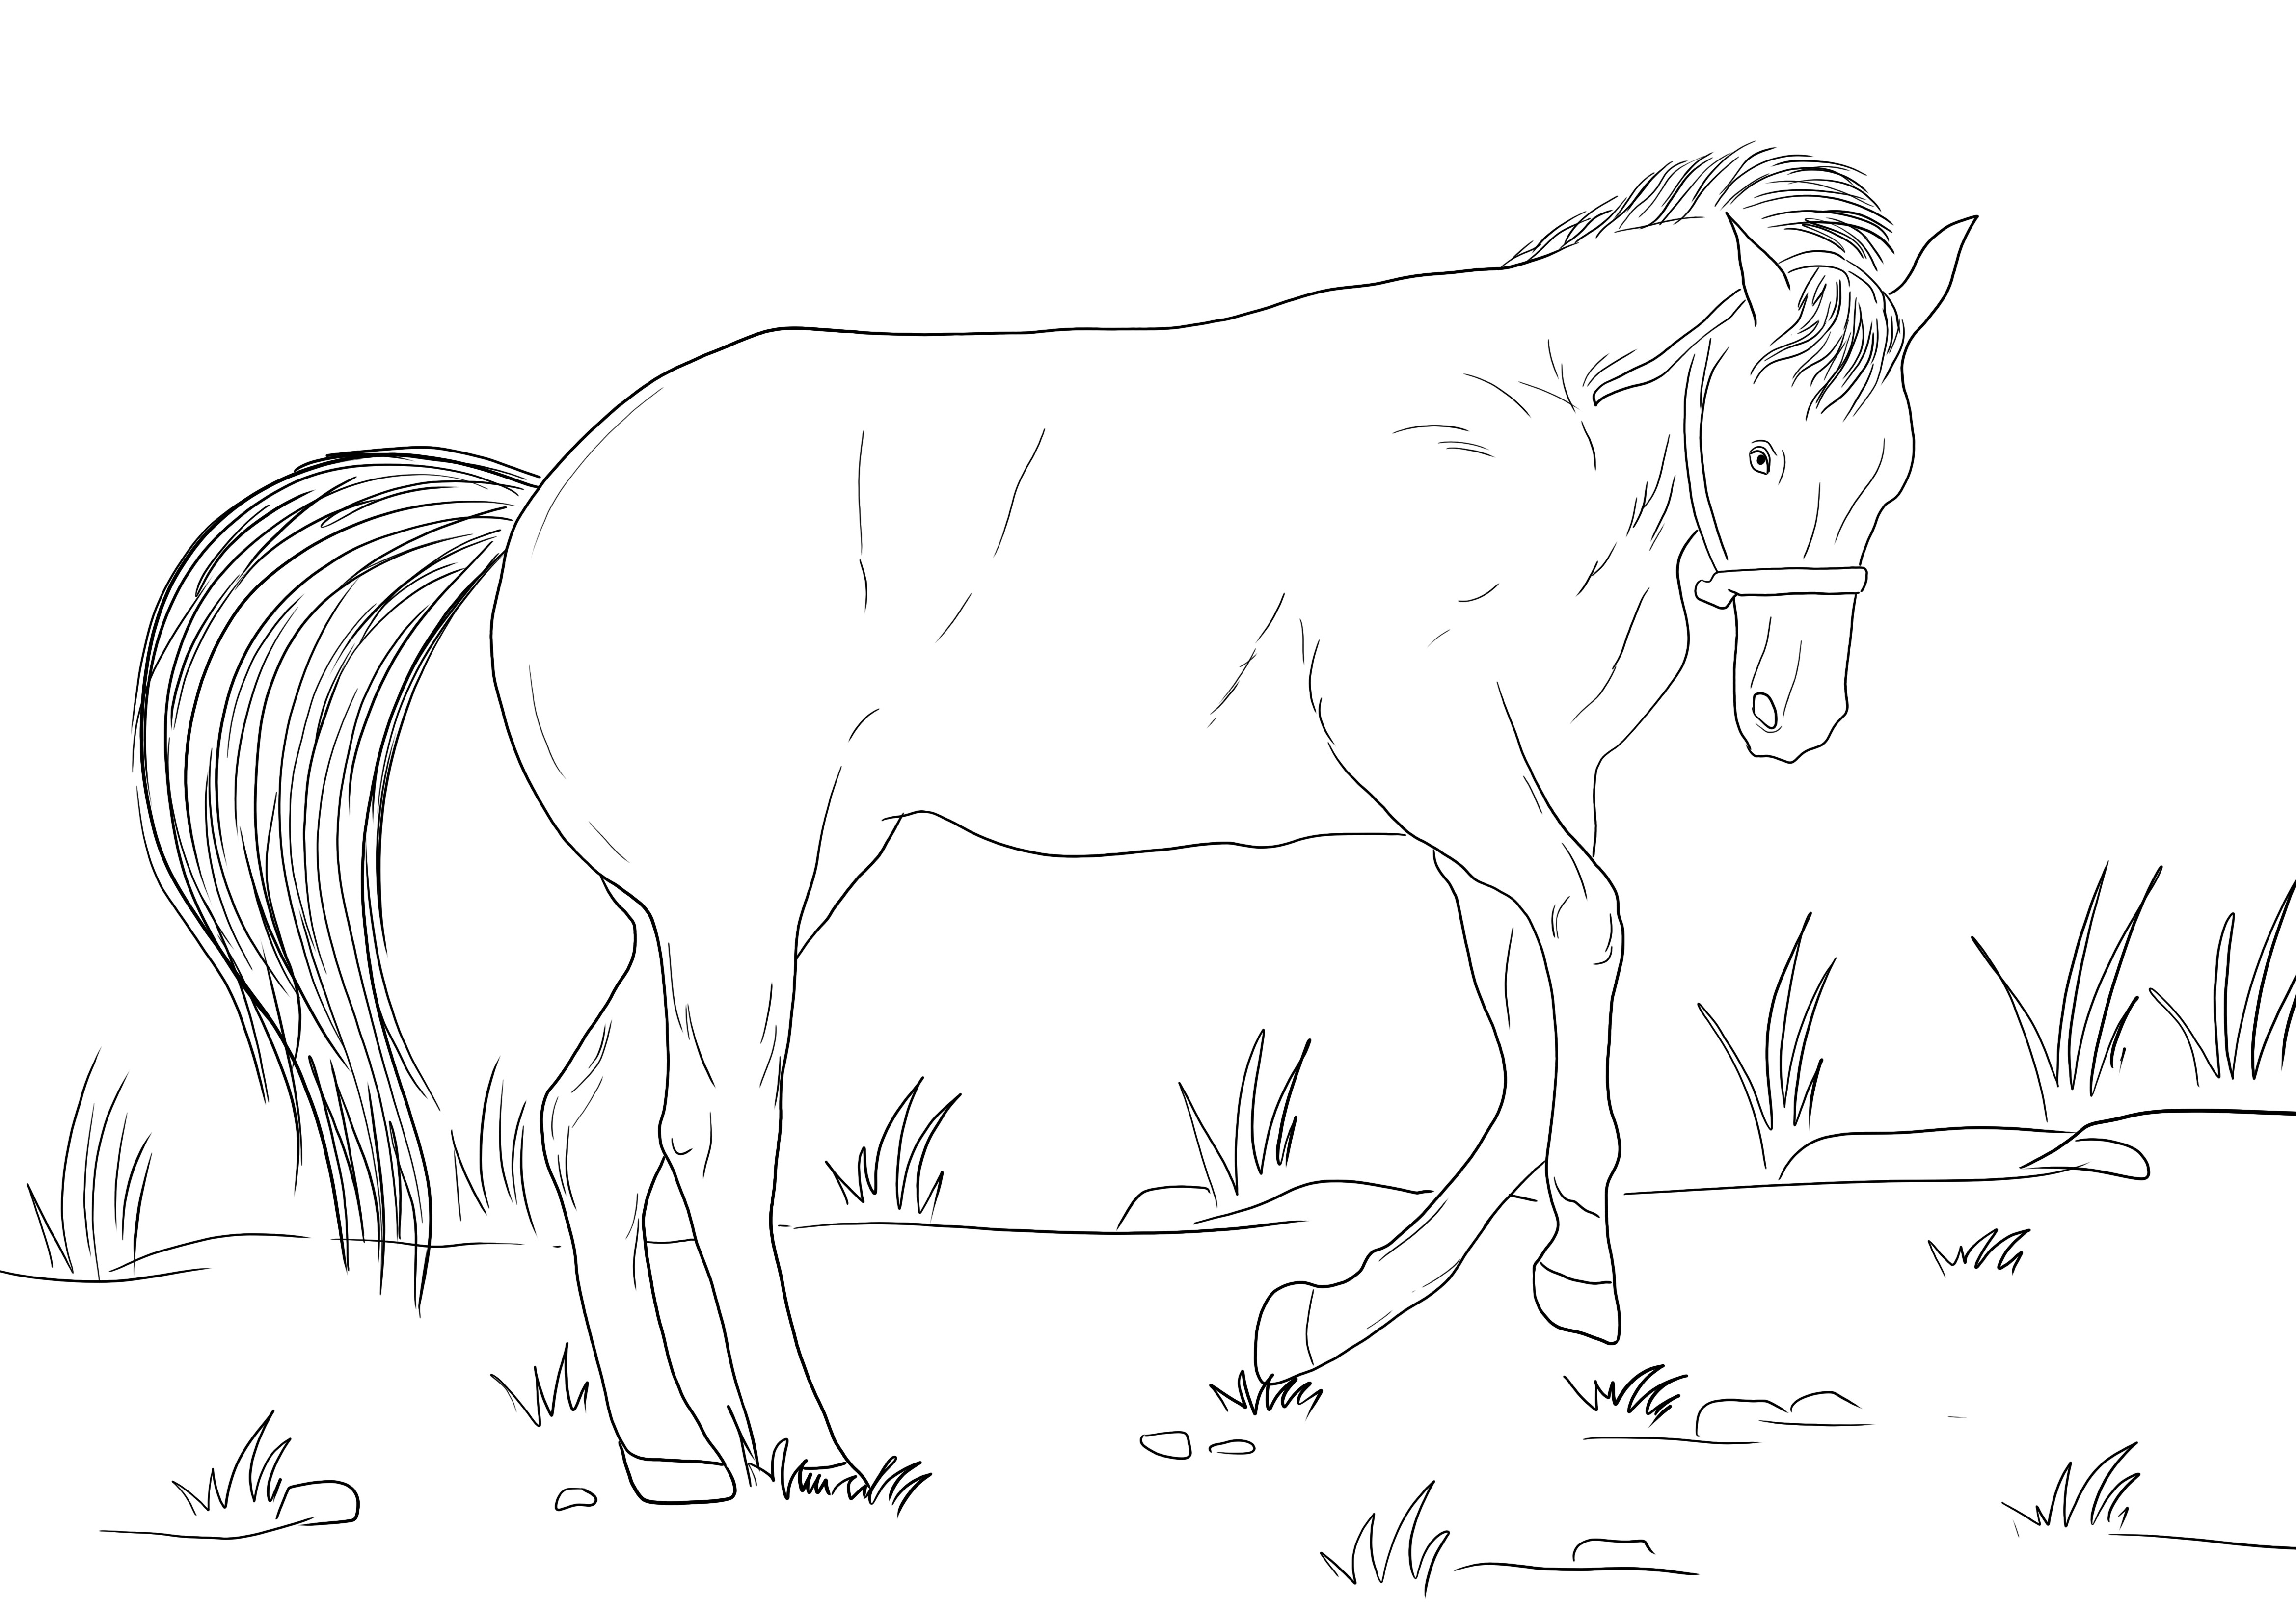 Çocukların hayvanlar hakkında bilgi edinmesi için ücretsiz yazdırılabilir bir Bucking Horse boyama resmi